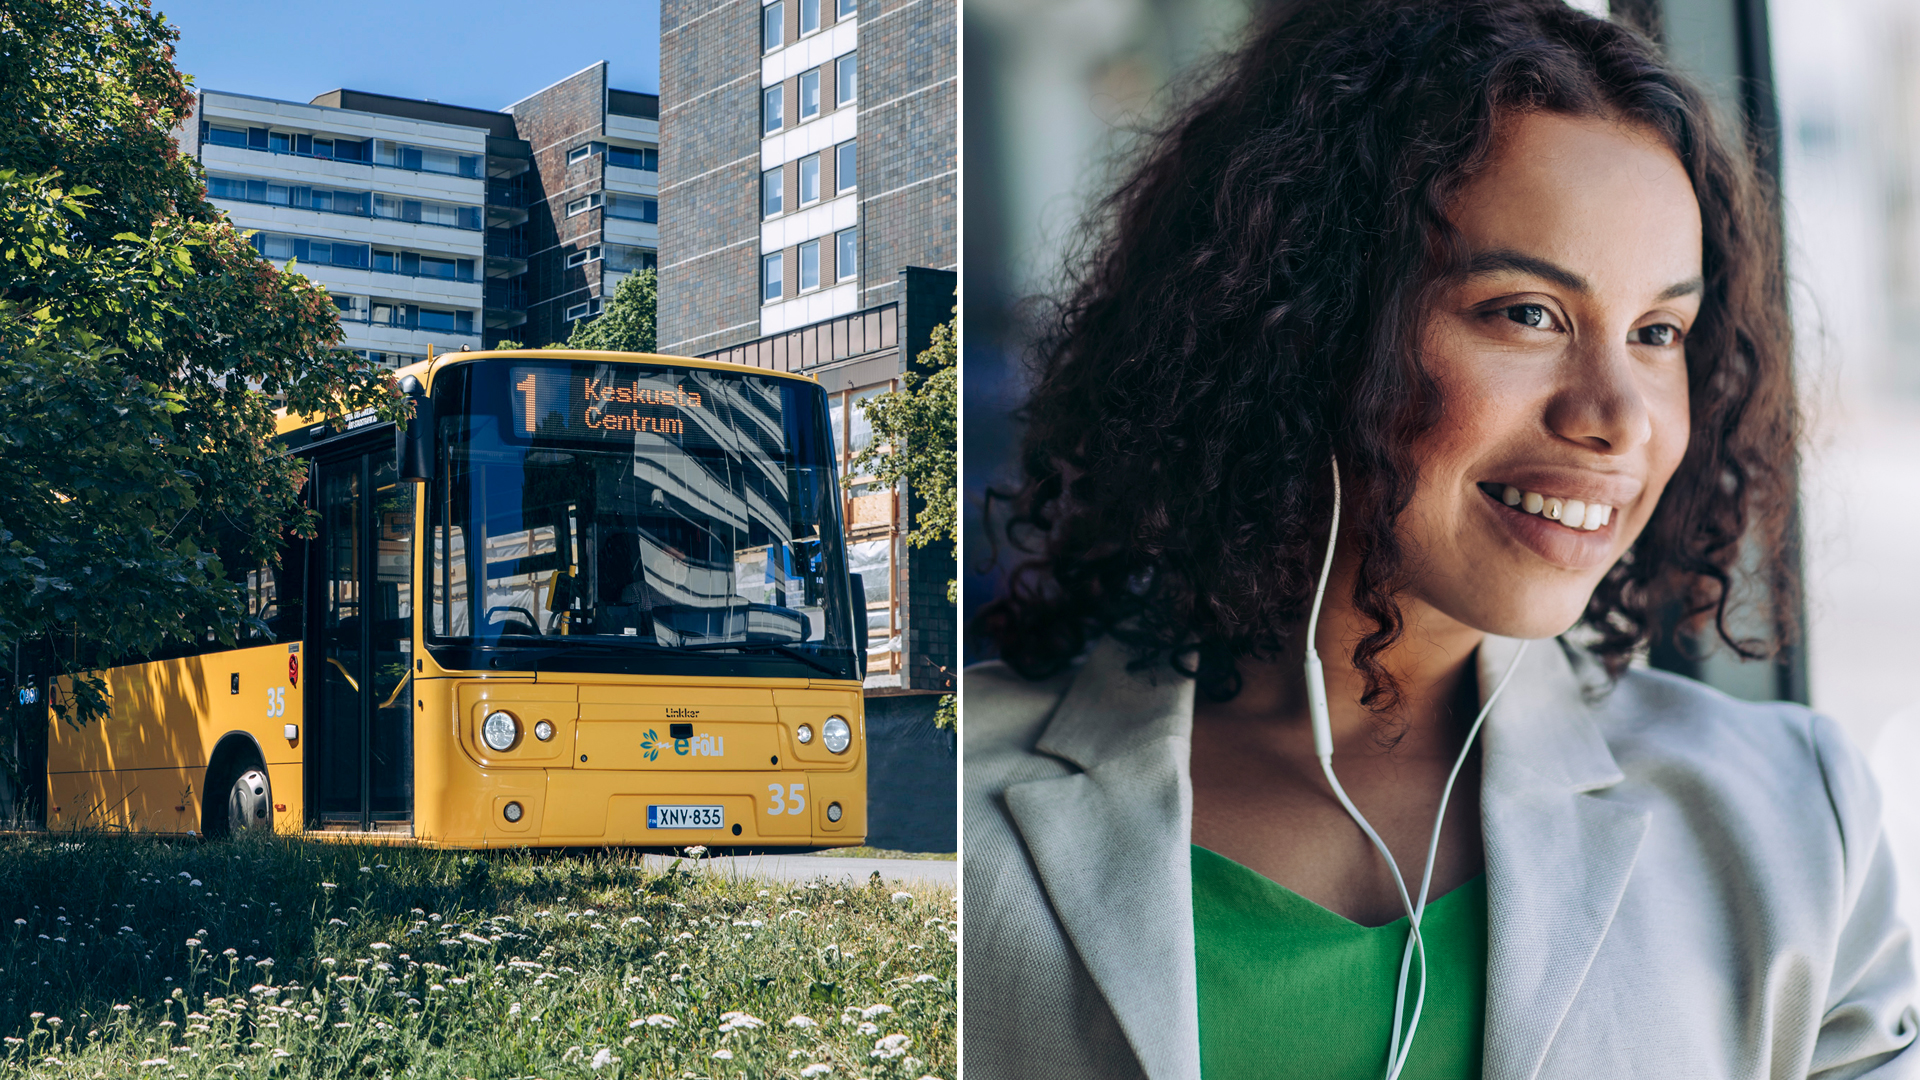 Kuvituskuvassa on kuvapari, jossa vasemmalla on Turun sähköbussi ja oikealla siinä matkustava nuori nainen.